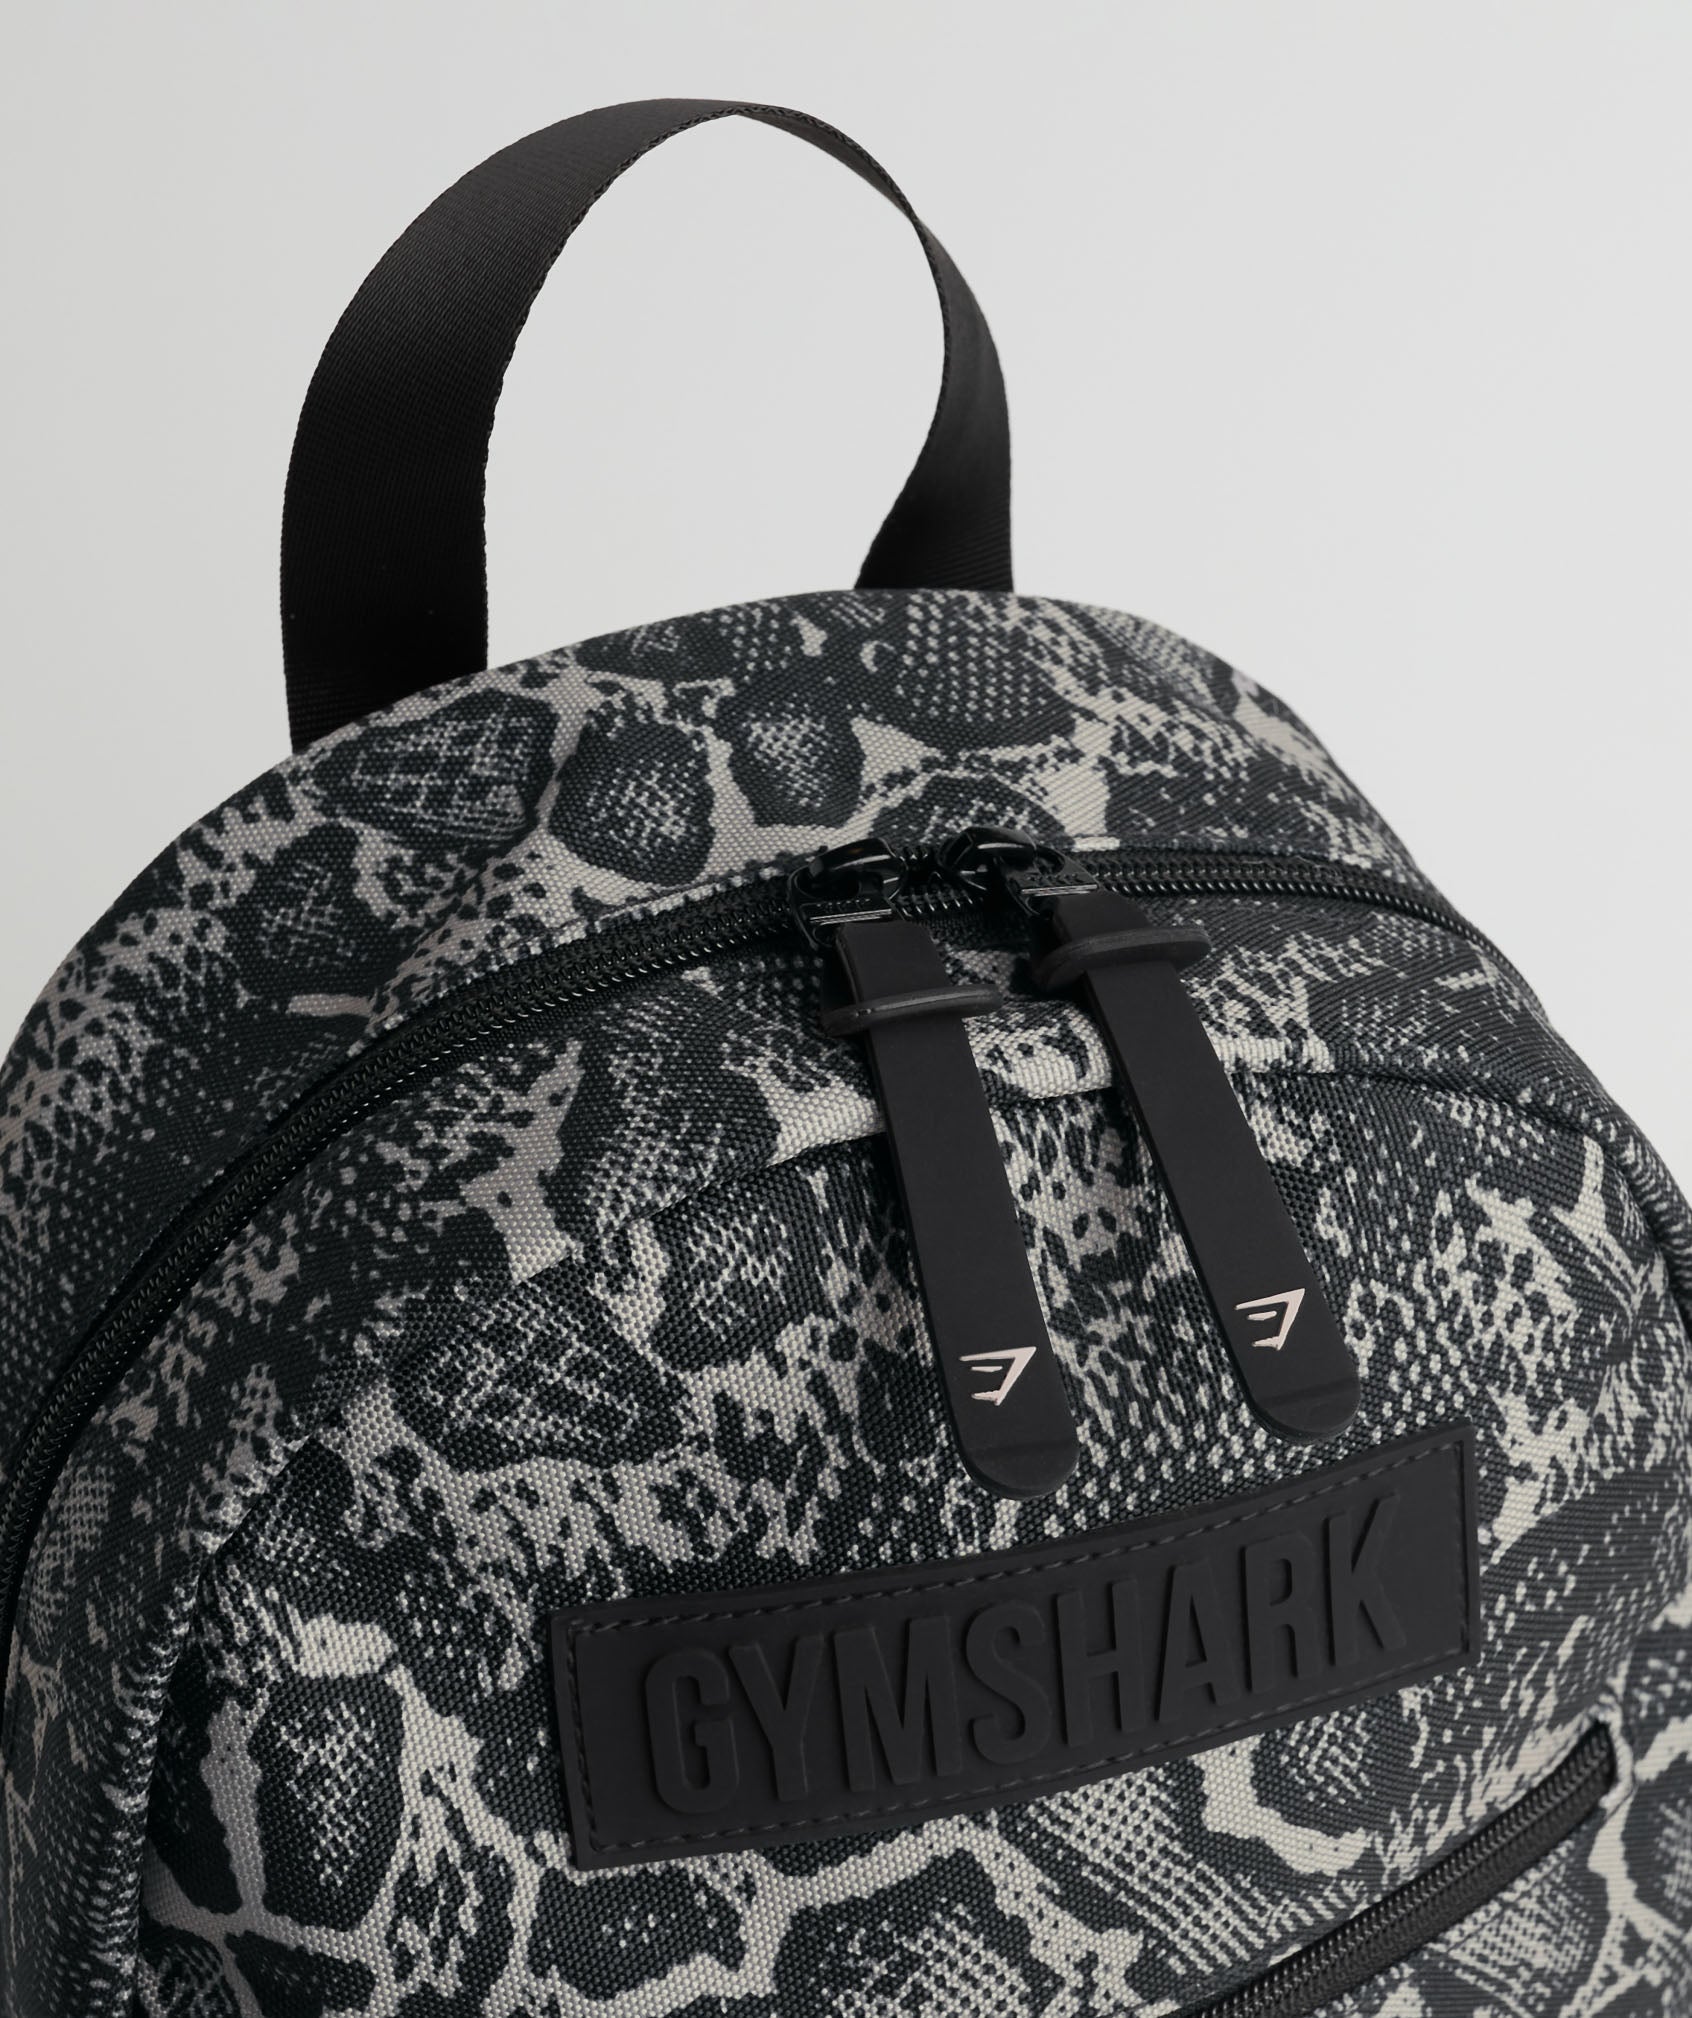 Everyday Print Mini Backpack in Black Print